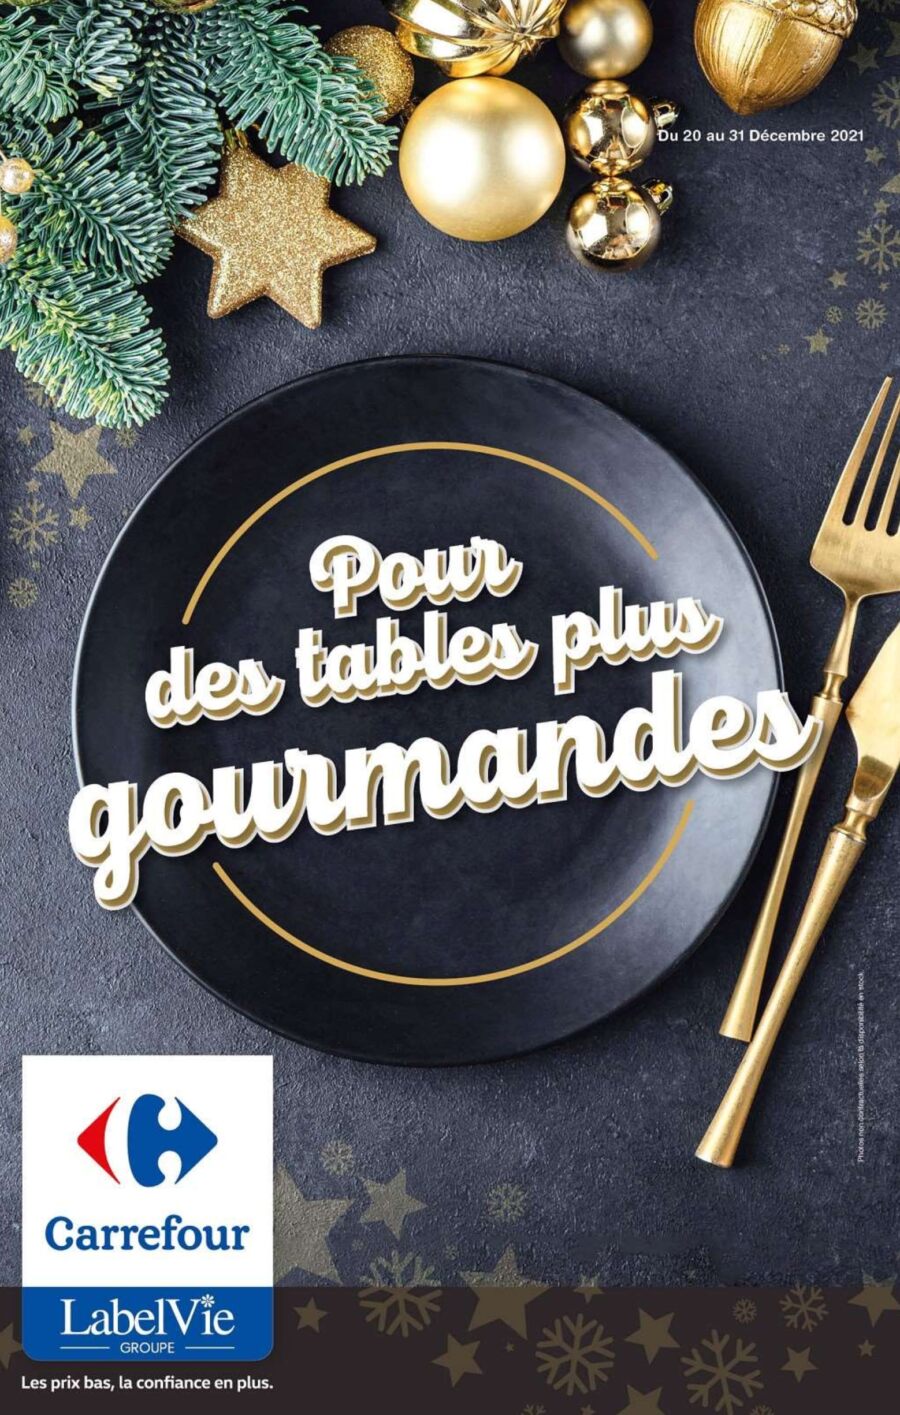 Catalogue Carrefour Maroc Pour des tables gourmandes du 20 au 31 décembre 2021